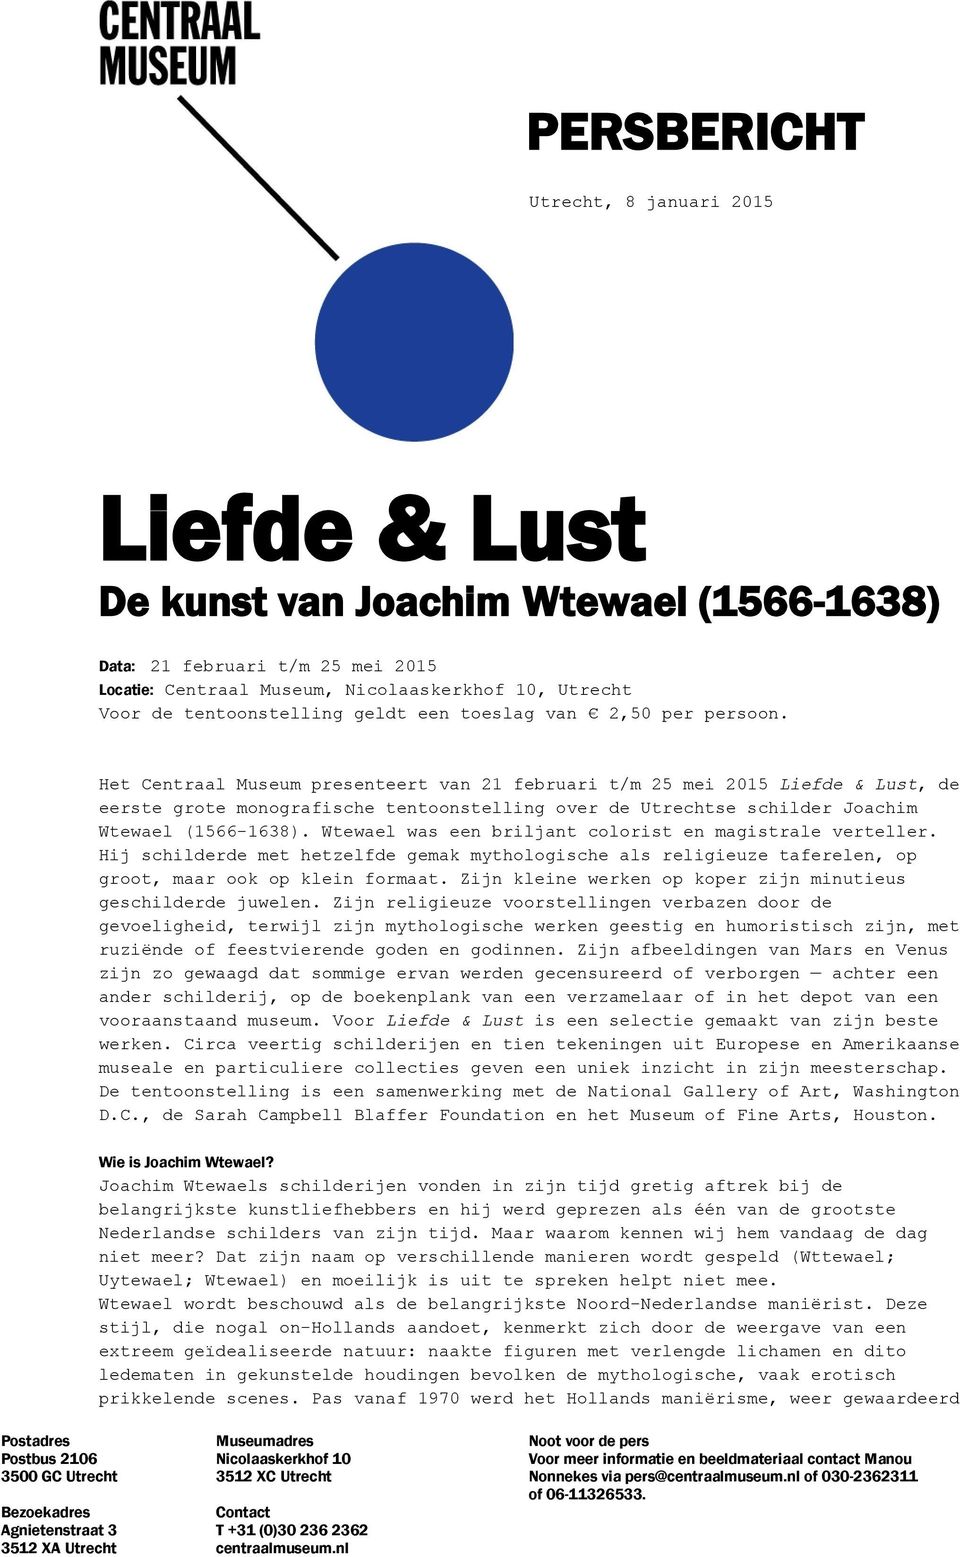 Het Centraal Museum presenteert van 21 februari t/m 25 mei 2015 Liefde & Lust, de eerste grote monografische tentoonstelling over de Utrechtse schilder Joachim Wtewael (1566-1638).